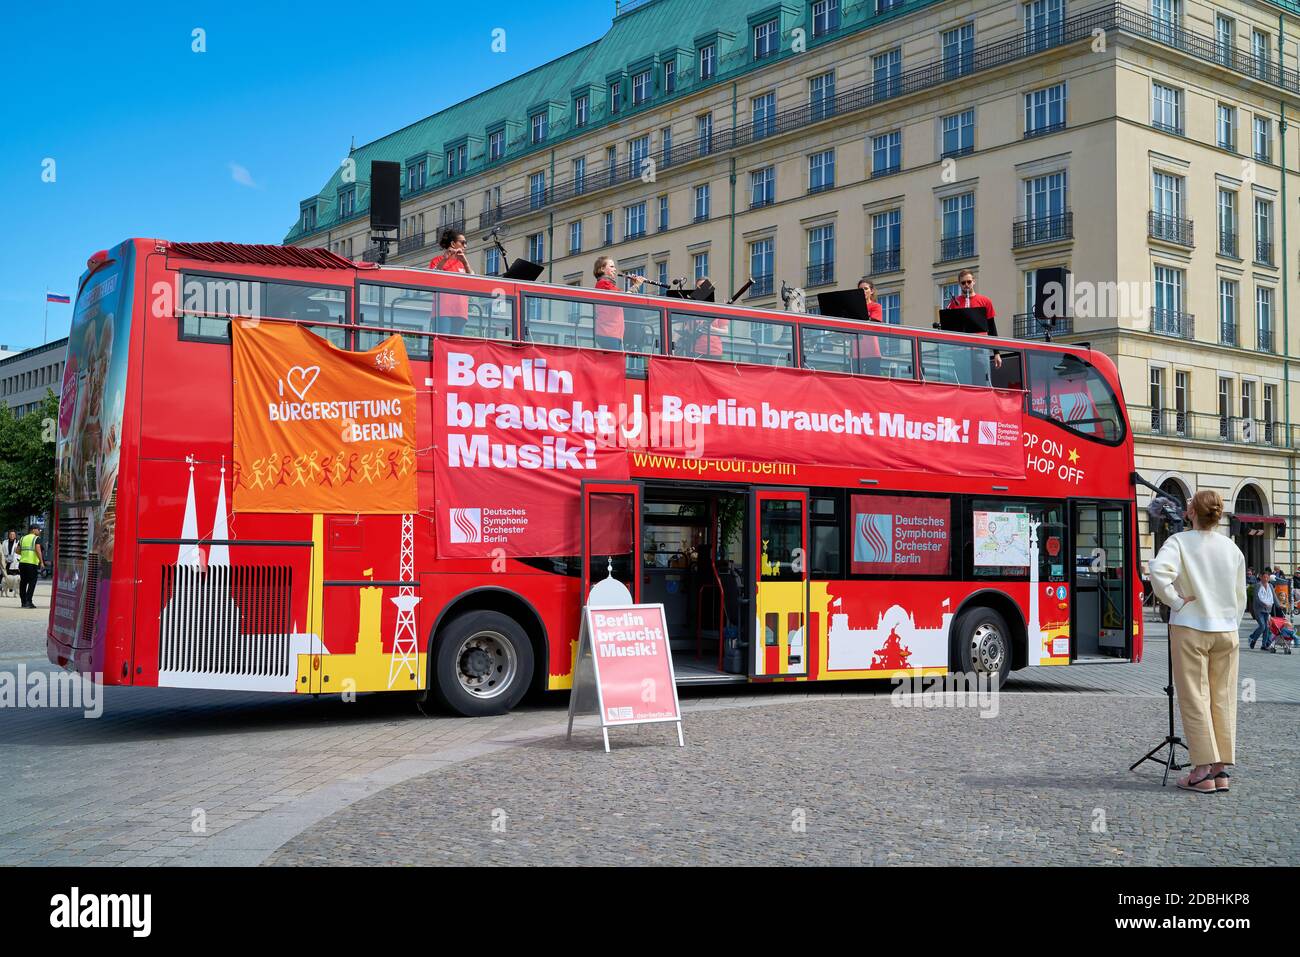 Corona Konzert in Berlin unter dem Motto 'Berlin braucht Musik'. Musiker des Deutschen Symphonieorchesters Berlin musizieren im Bus für Anwohner und Touristen. Aufgrund der Corona-Pandemie sind Konzertereignisse noch nicht erlaubt. Stockfoto